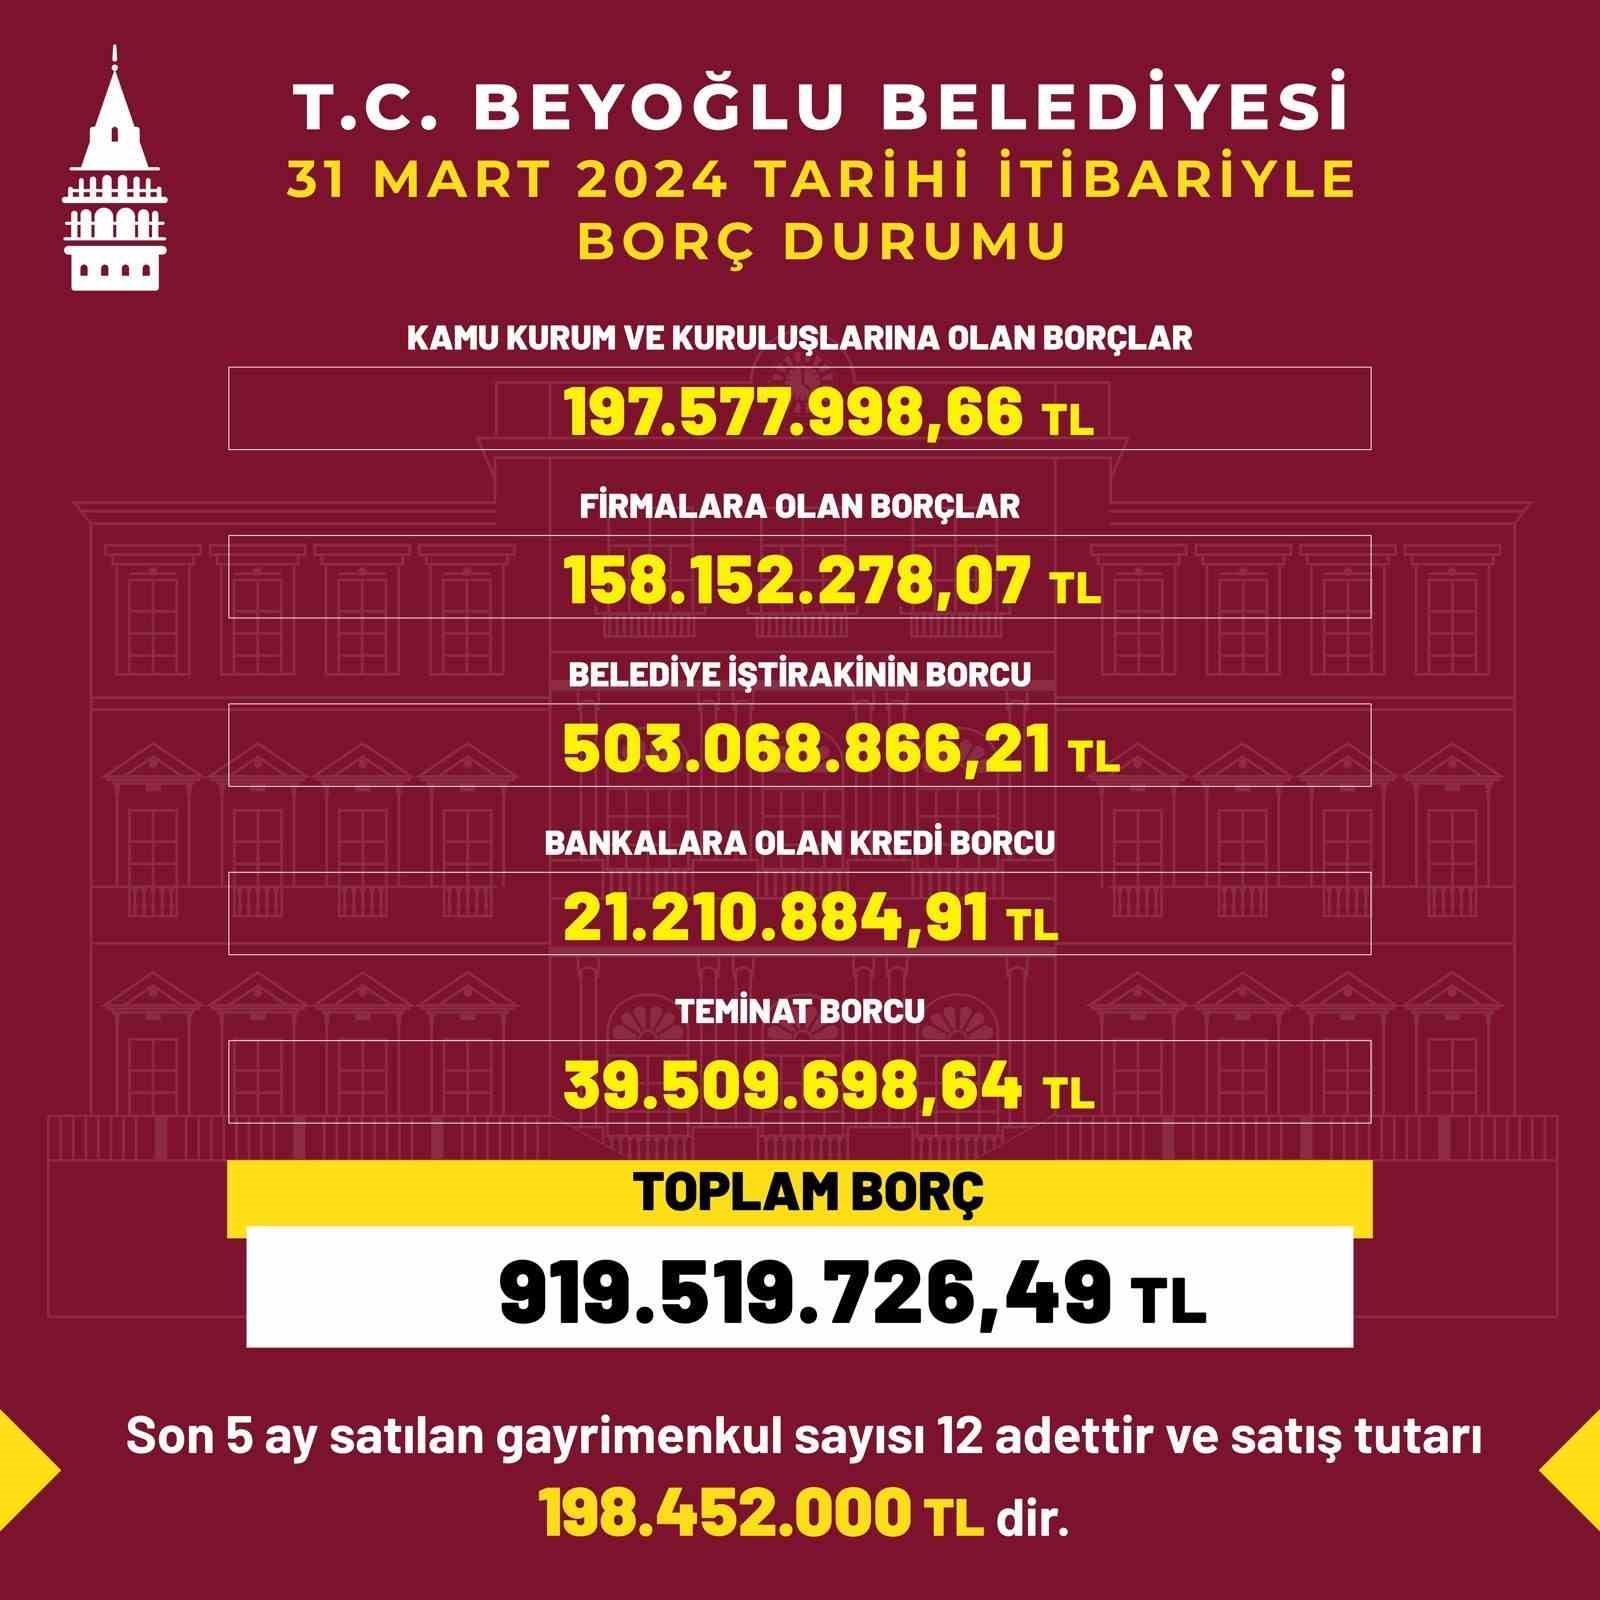 Beyoğlu Belediyesi’nin borcu dijital ekranlara yansıdı
